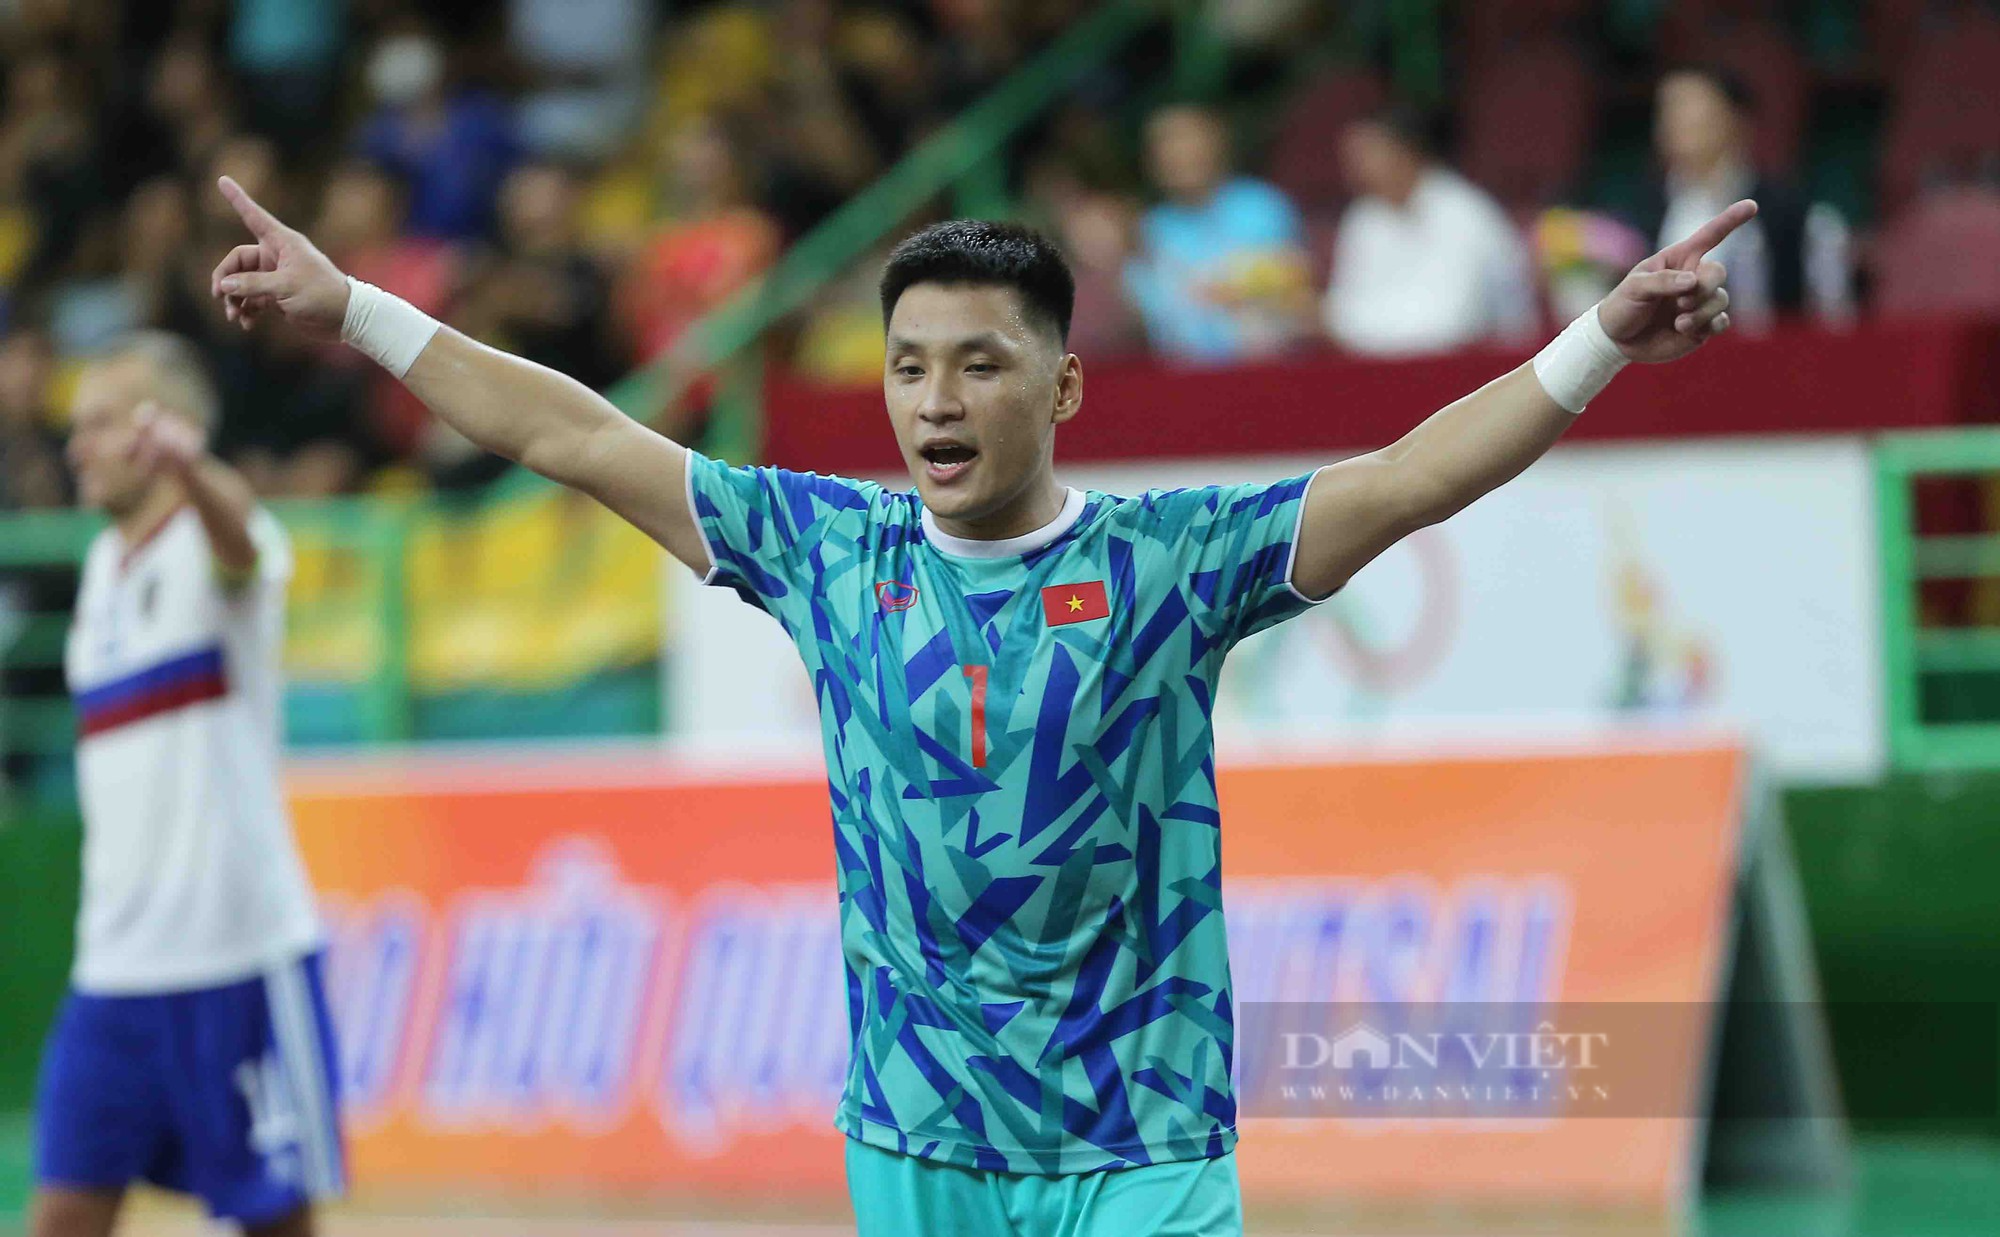 Tân đội trưởng ghi bàn phút cuối, futsal Việt Nam kịch tính cầm hoà đội hạng 4 thế giới - Ảnh 12.